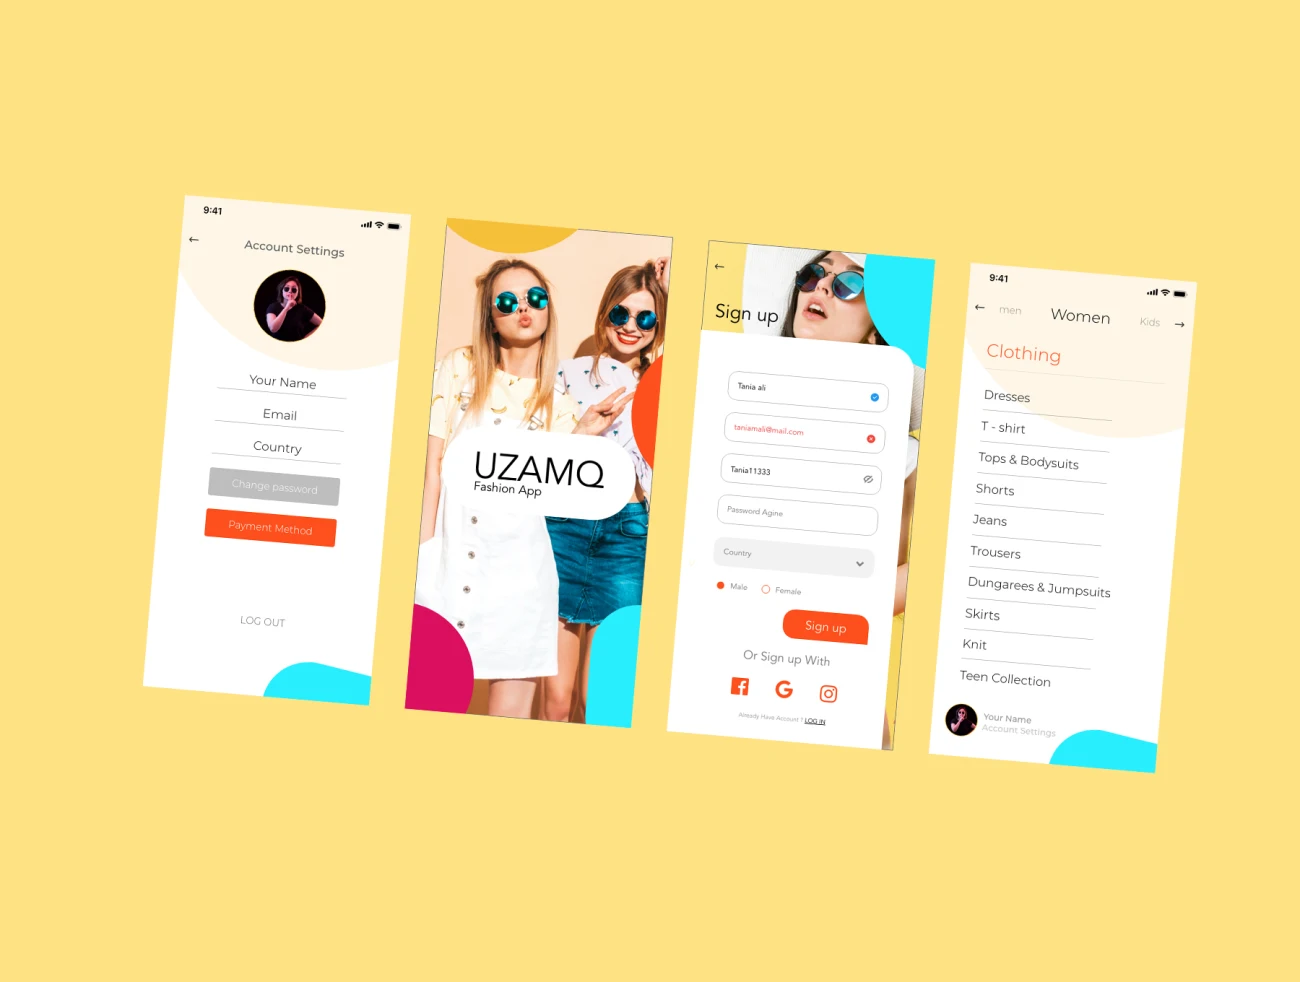 潮流时尚电商服饰网购应用设计套件 UZAMQ Ui Fashion App-UI/UX、ui套件、付款、应用、支付、注册、海报、登录页、社交购物、网购-到位啦UI